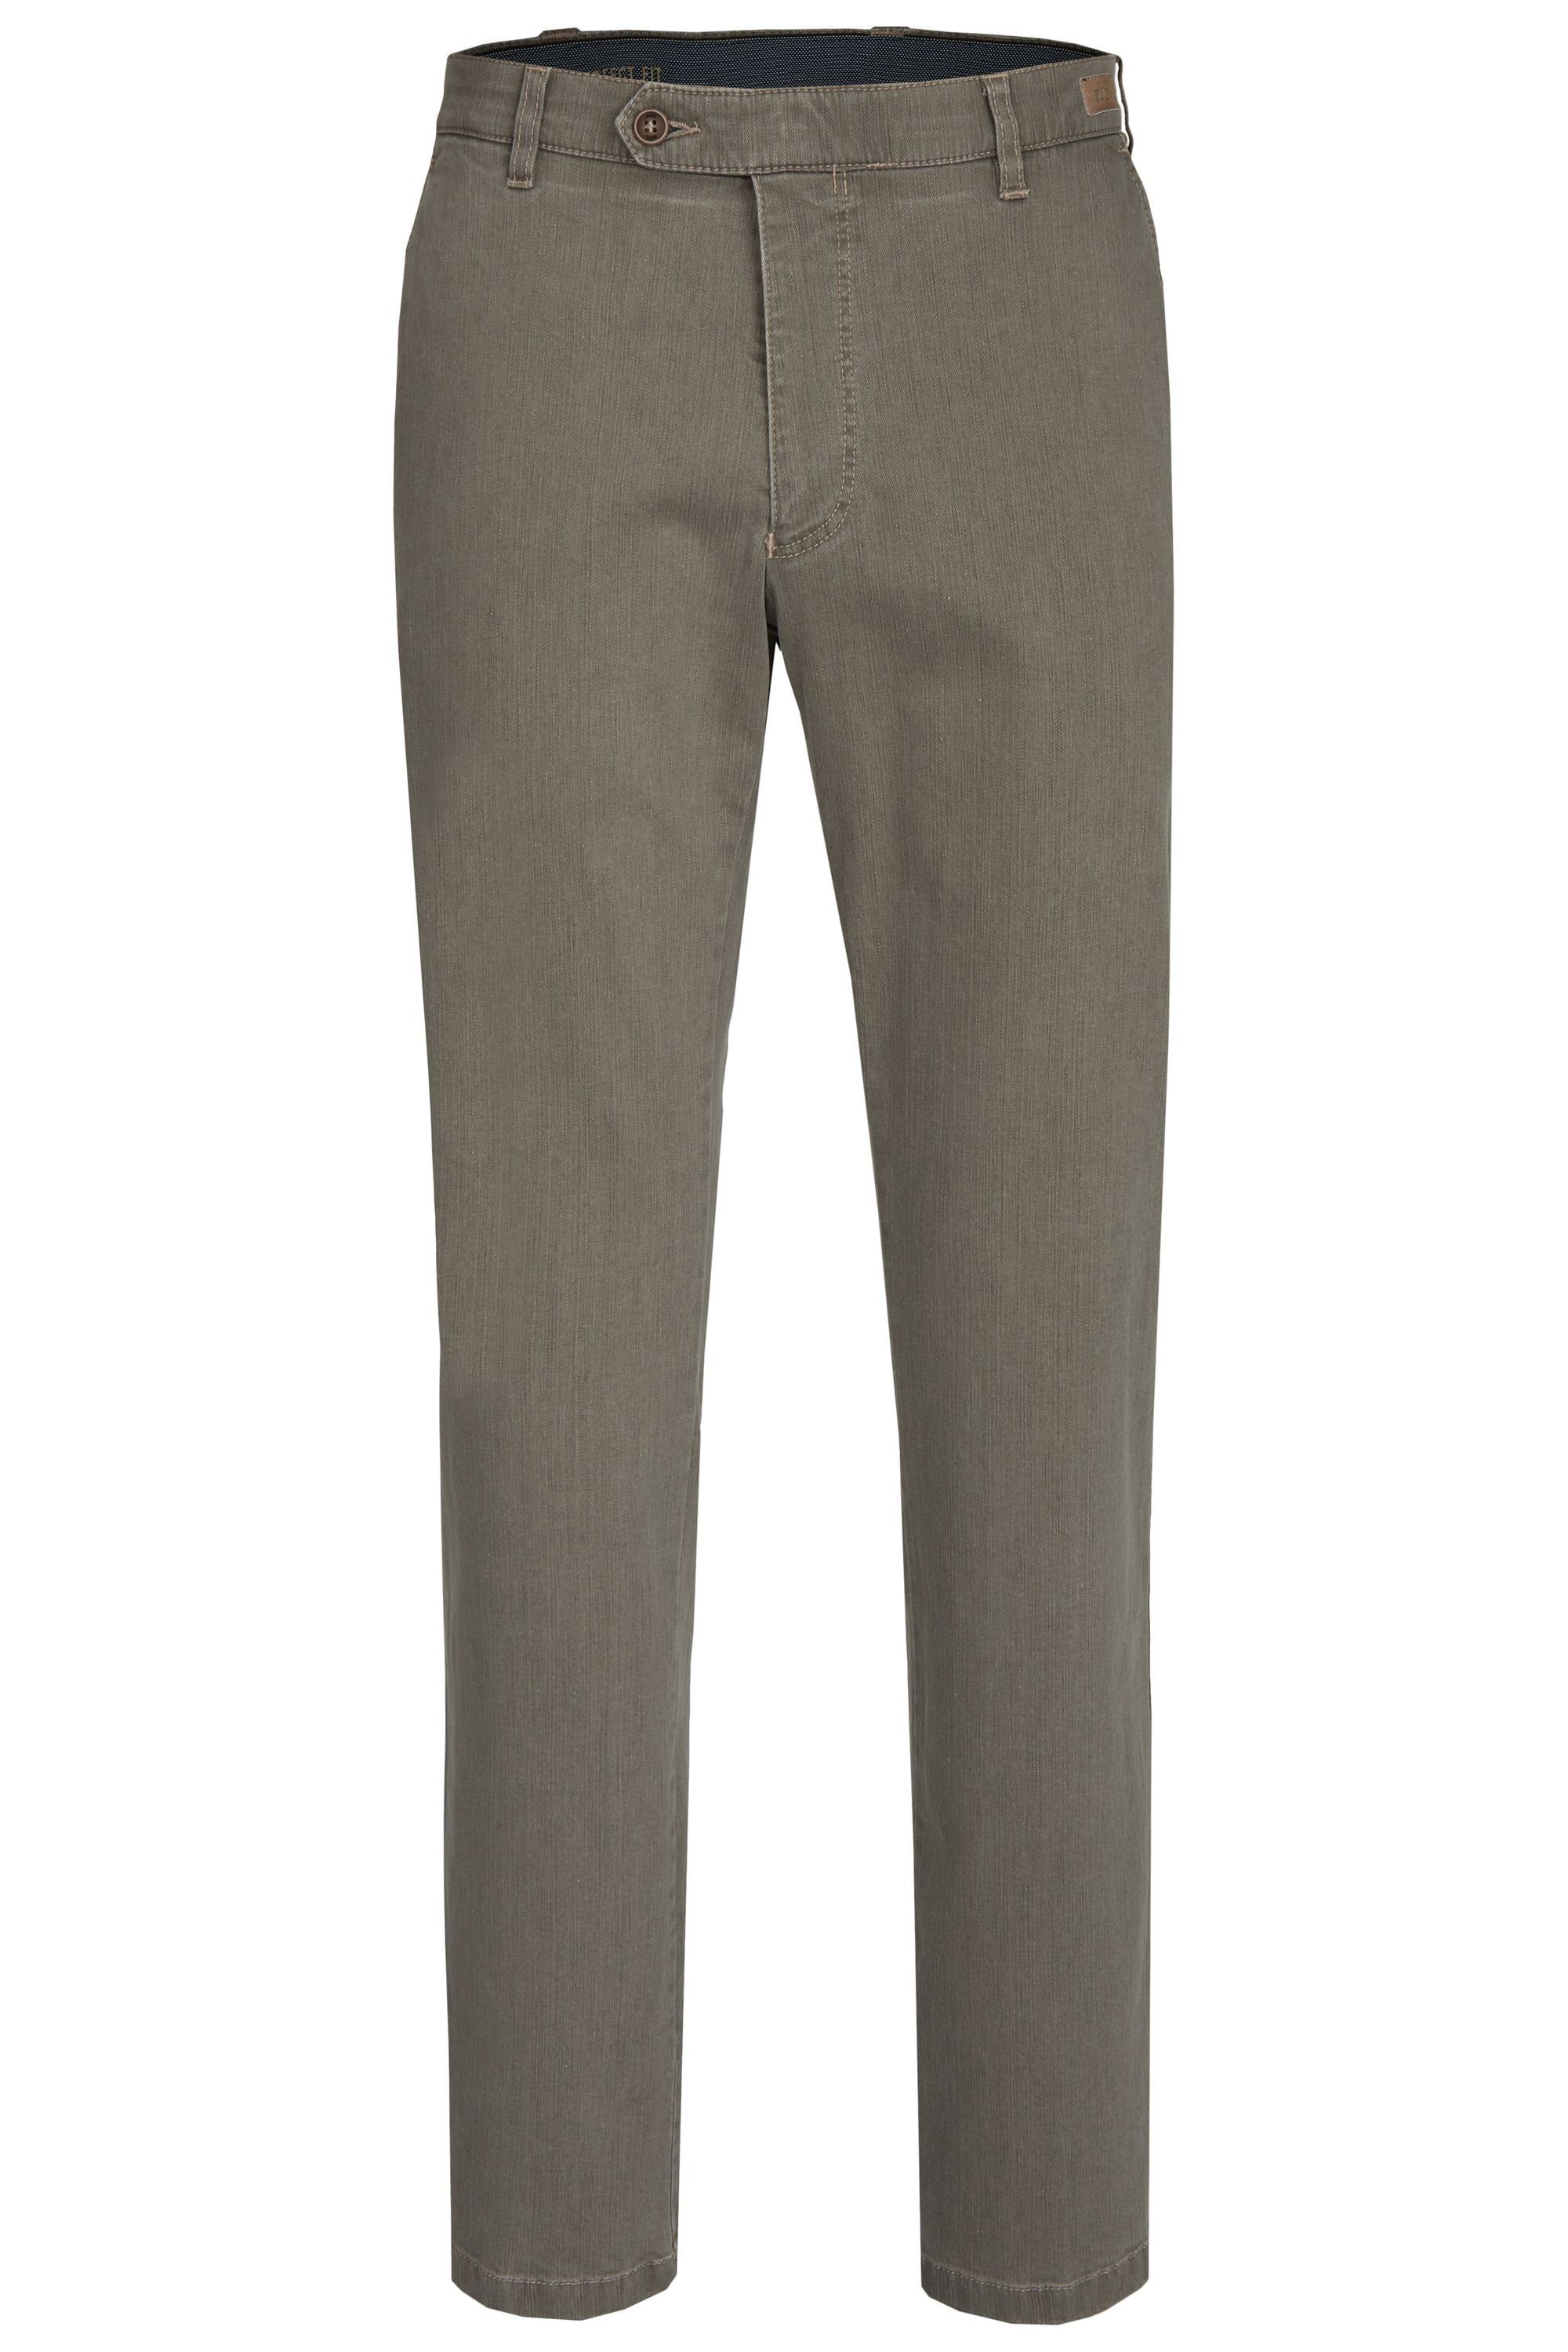 olive Jeans Hose 526 Modell Flex Perfect (24) aubi: aubi Stretch aus Sommer Herren Jeans Fit Bequeme Baumwolle High